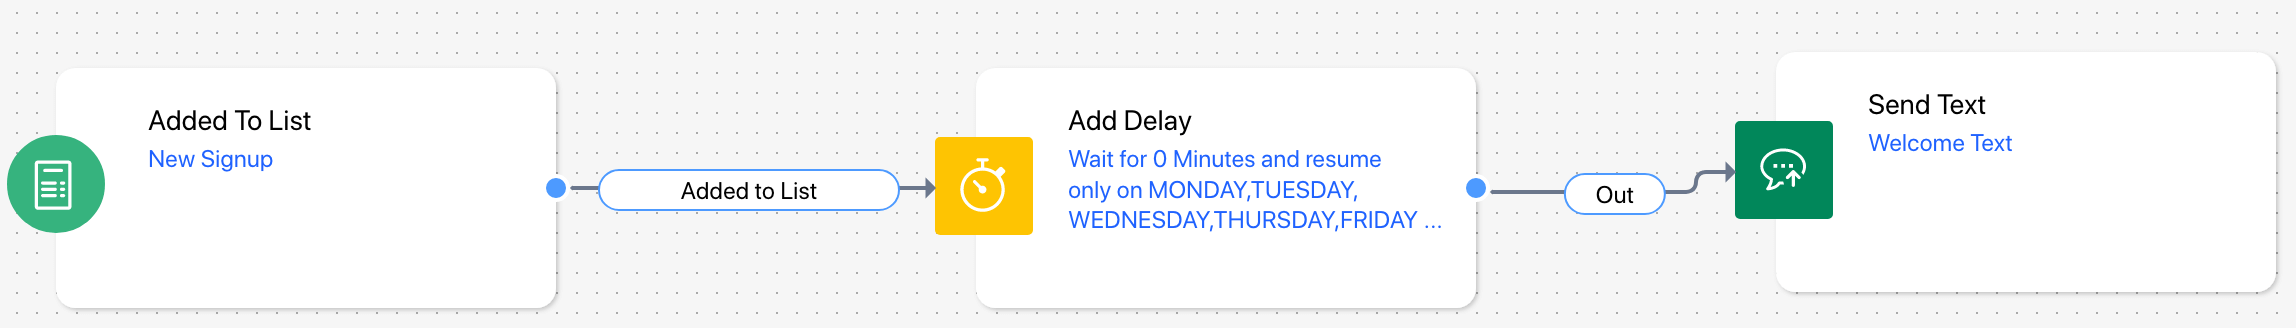 delay_text.png